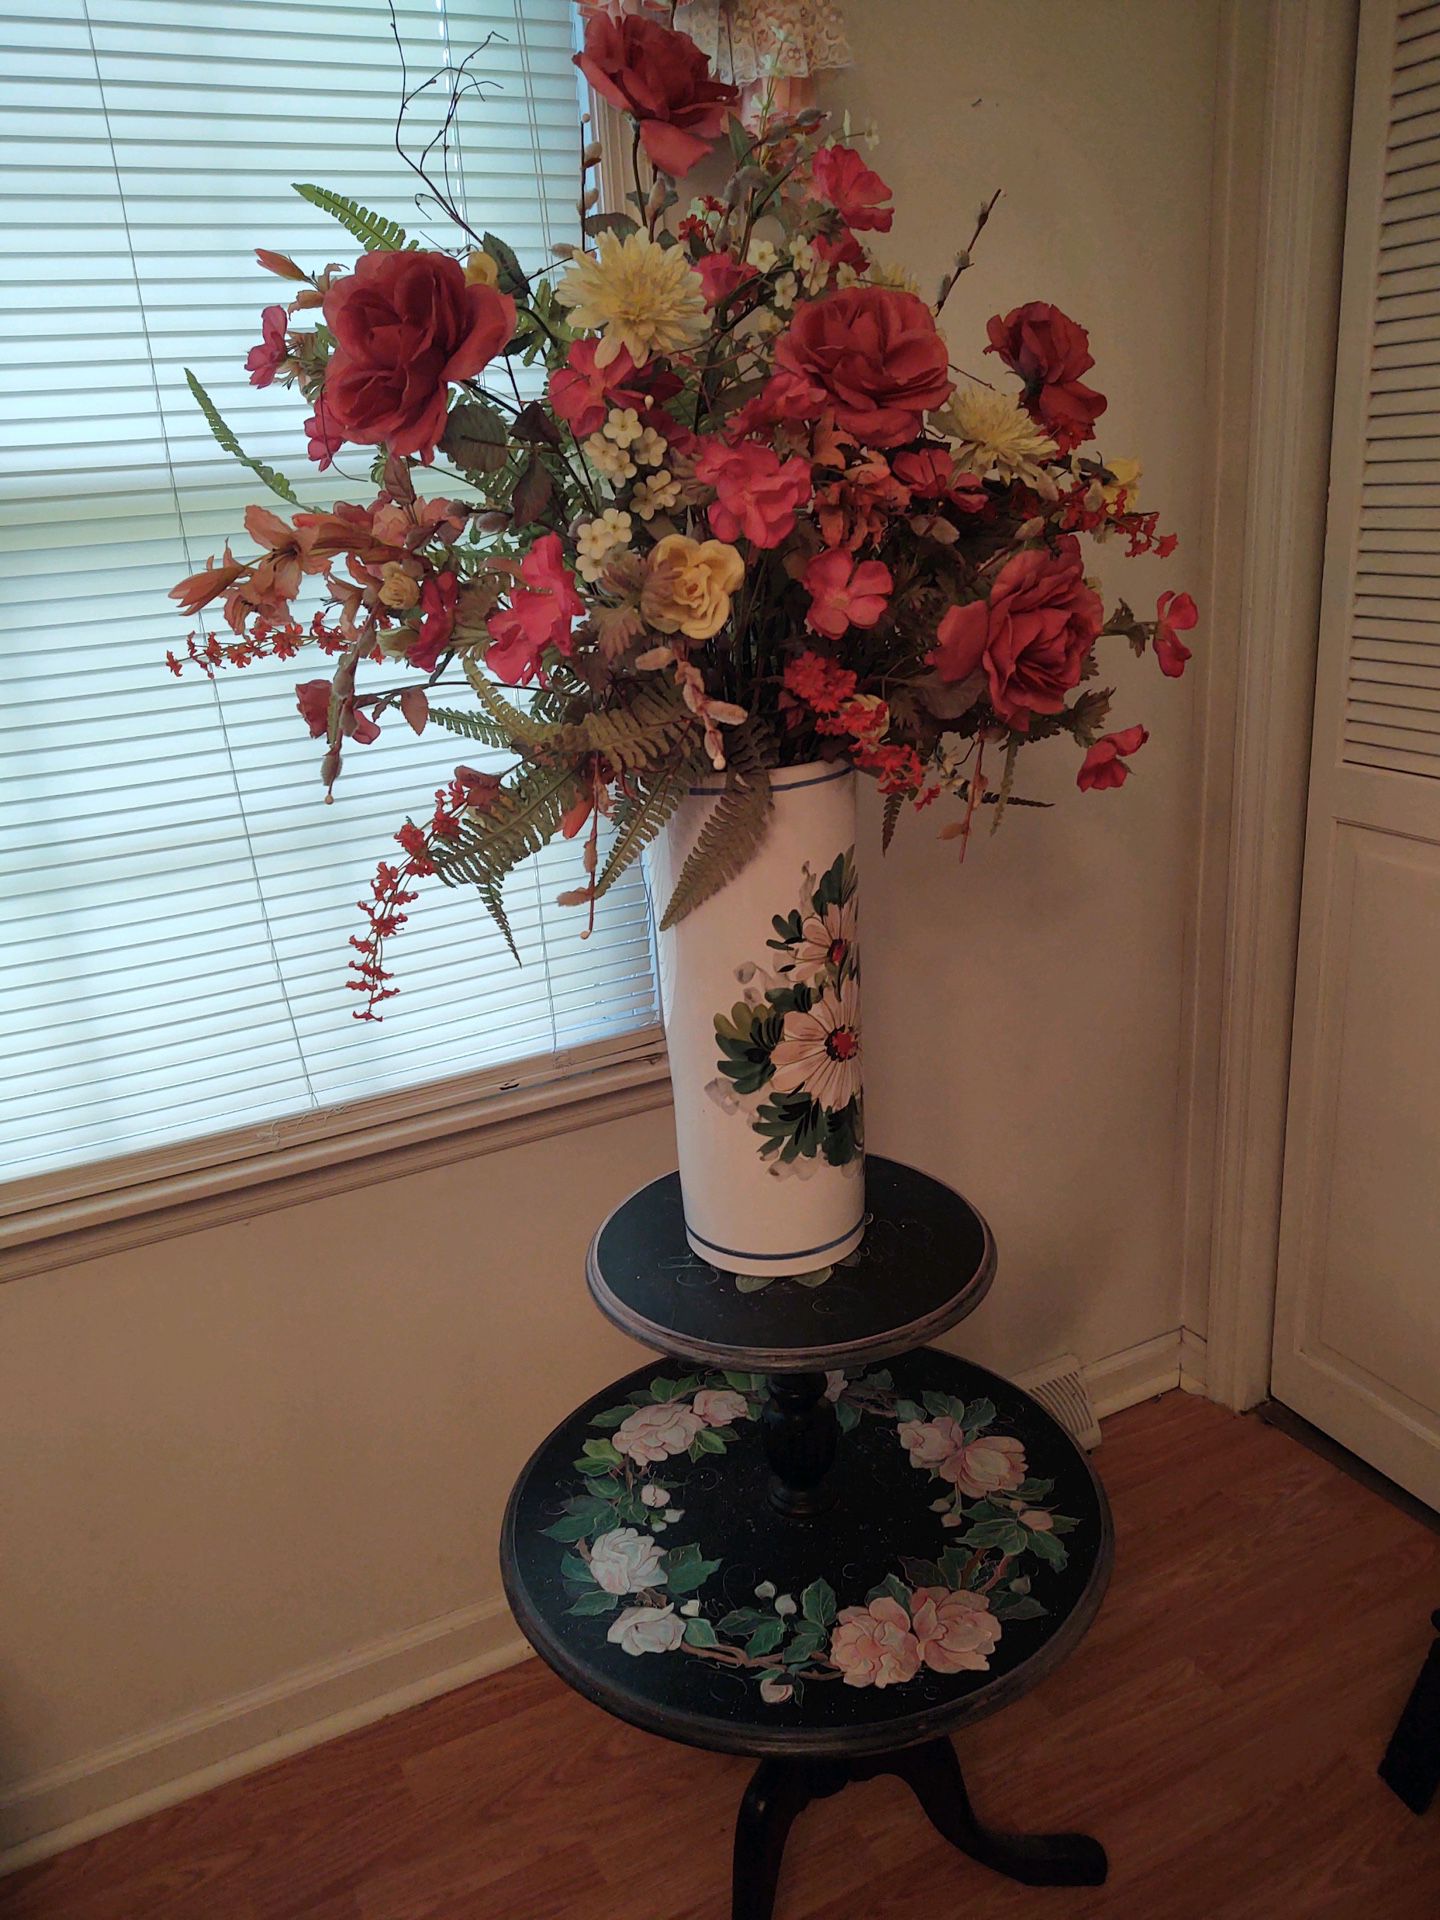 Antique Table with flower arrangement